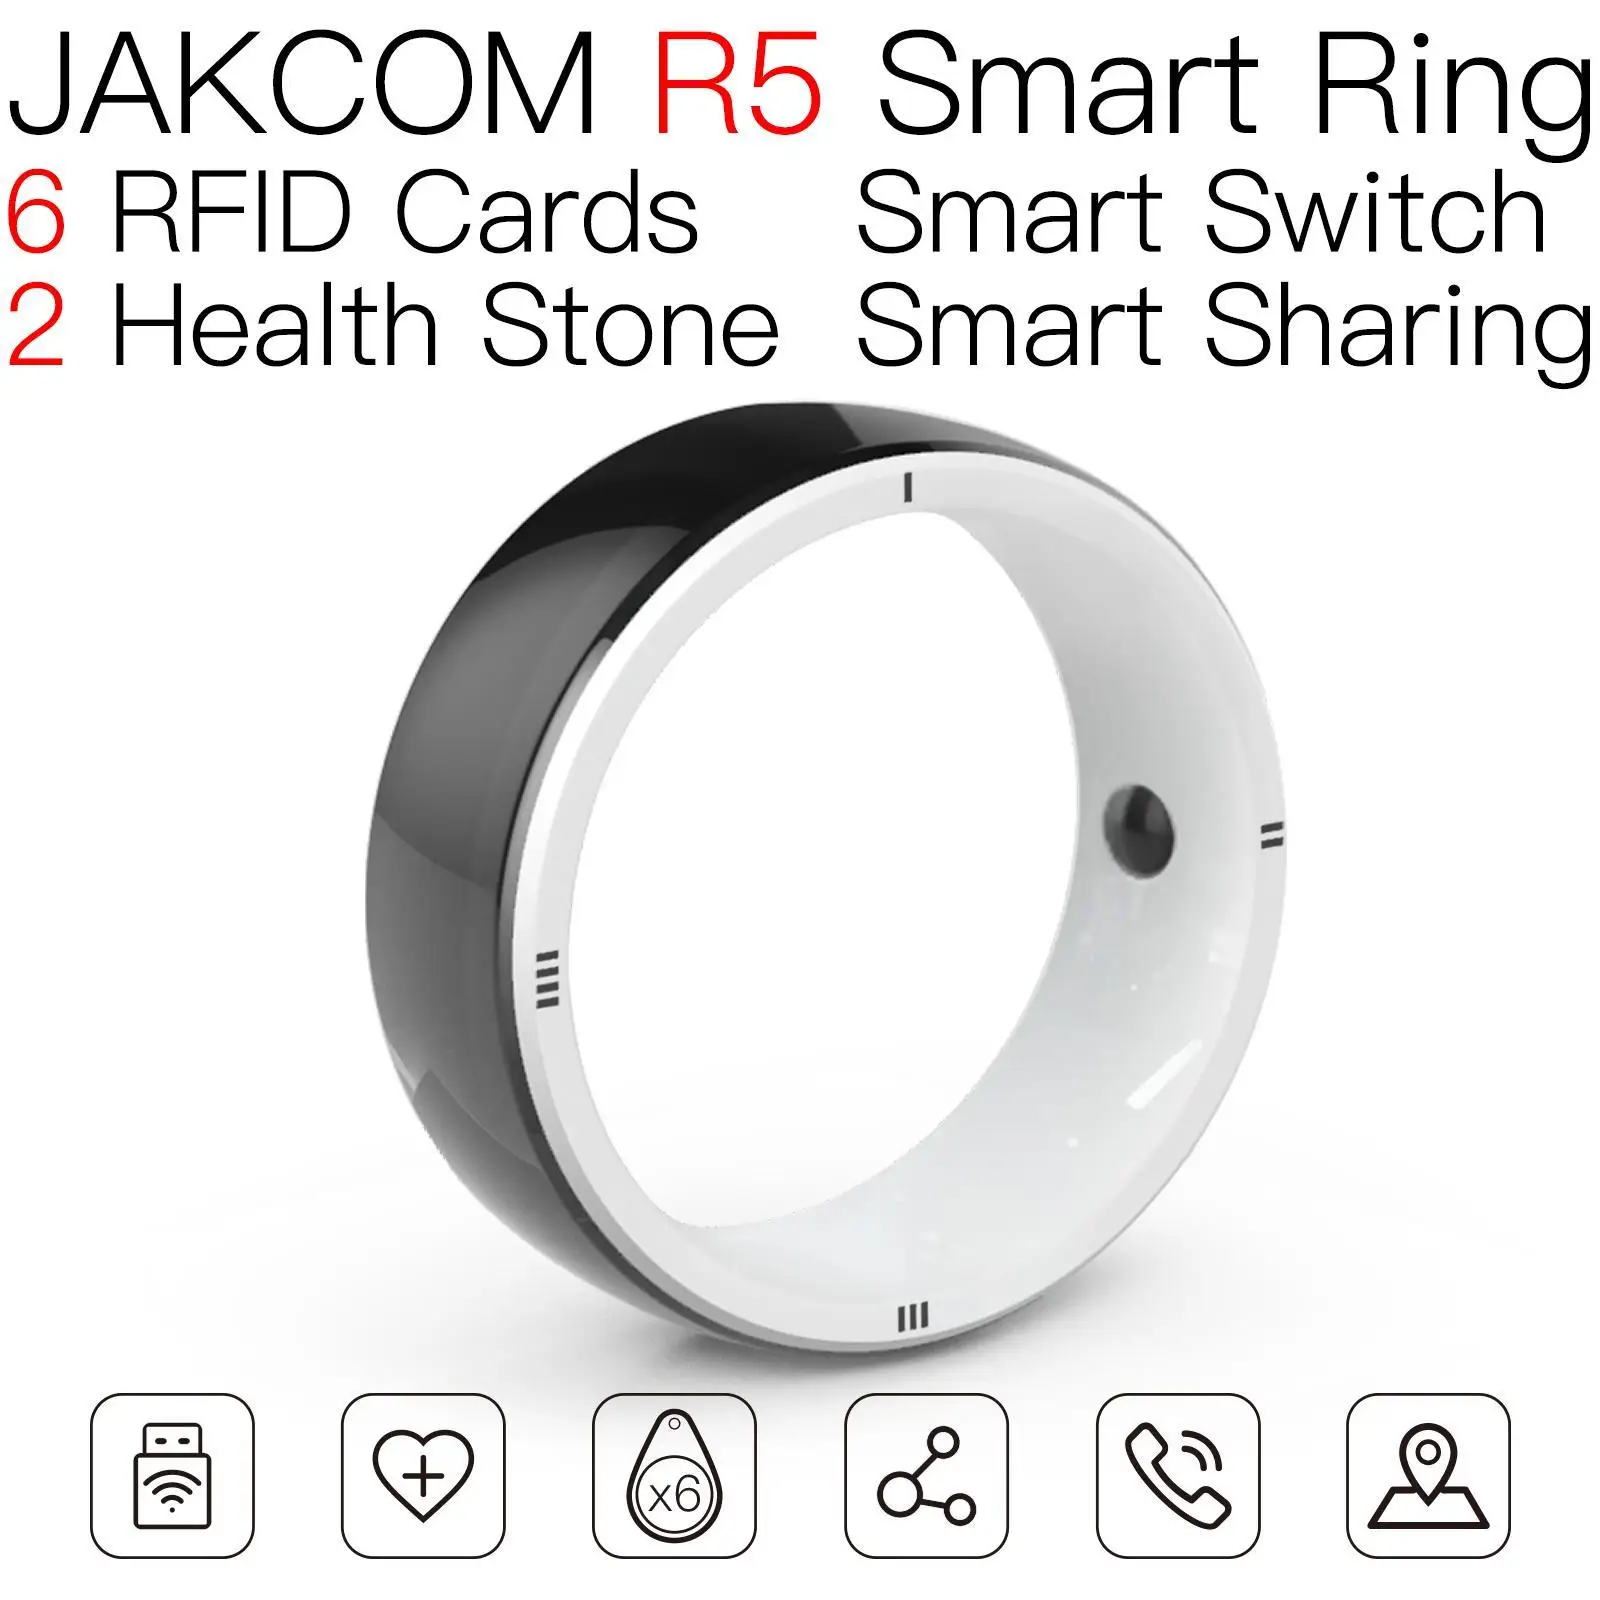 

Смарт-кольцо JAKCOM R5, лучше, чем новые горизонты, карта aurora rfid, баксетка, черный 100 струйный чип, ПВХ uhf-метка